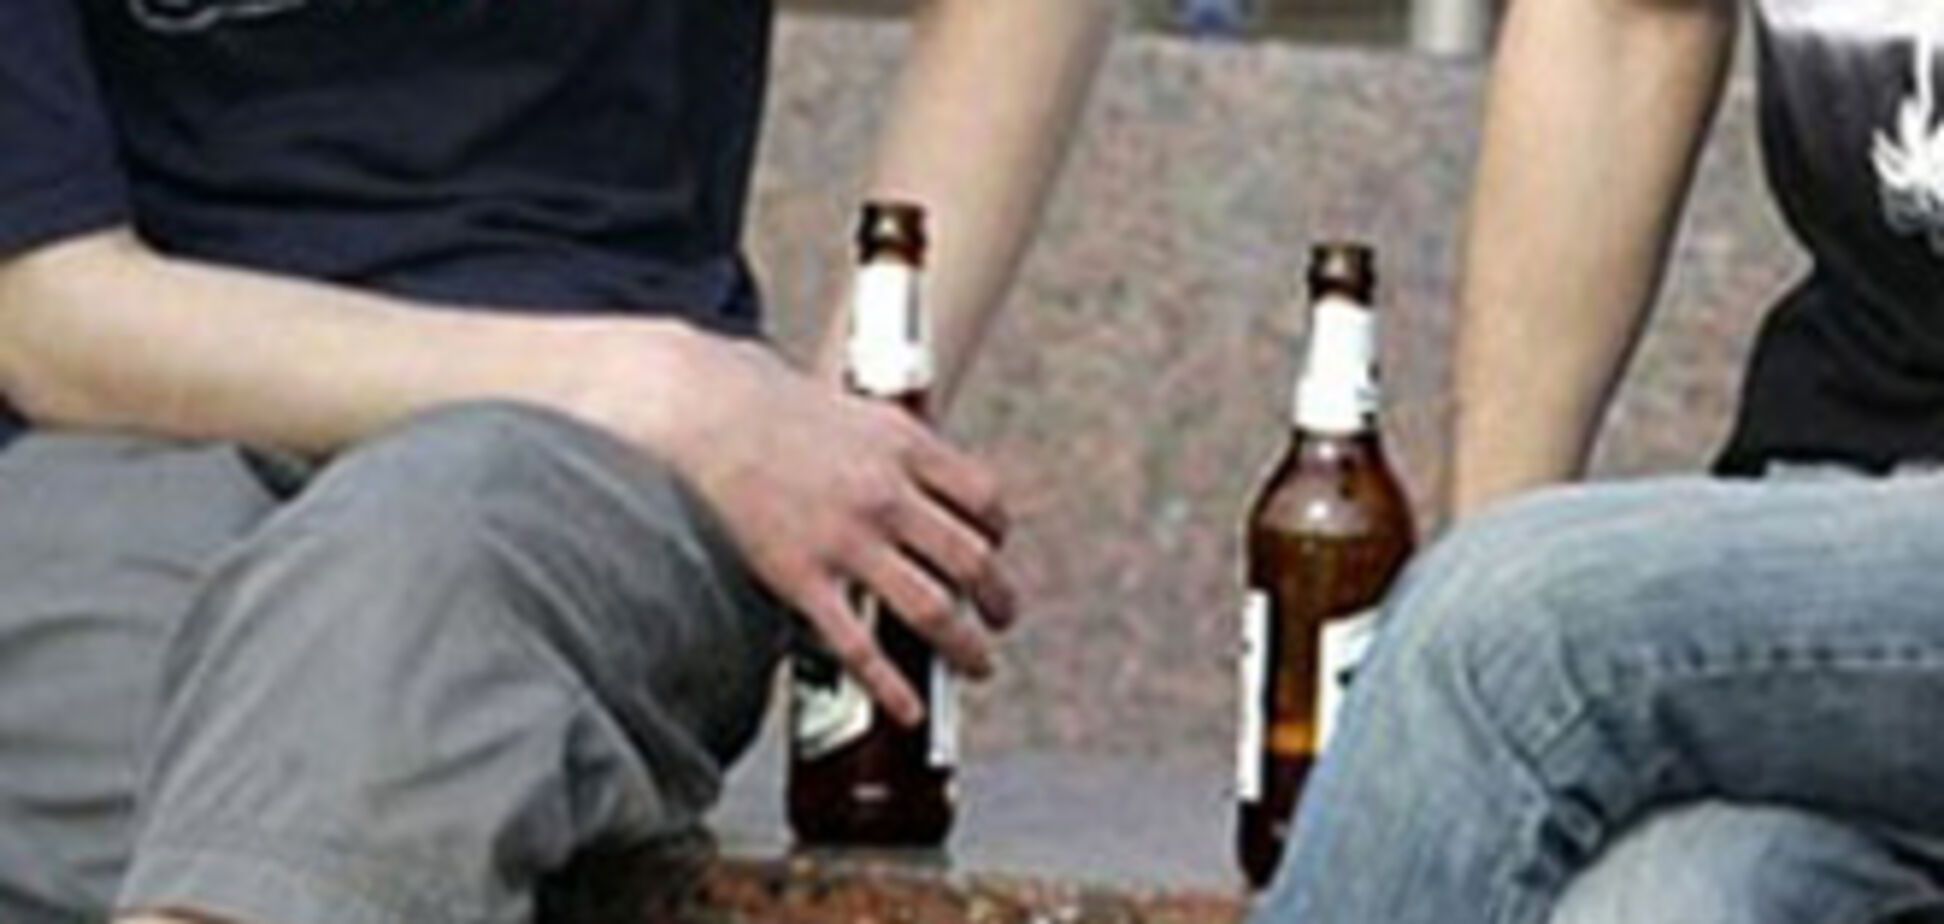 За розпивання пива на вулиці українця посадили в СІЗО